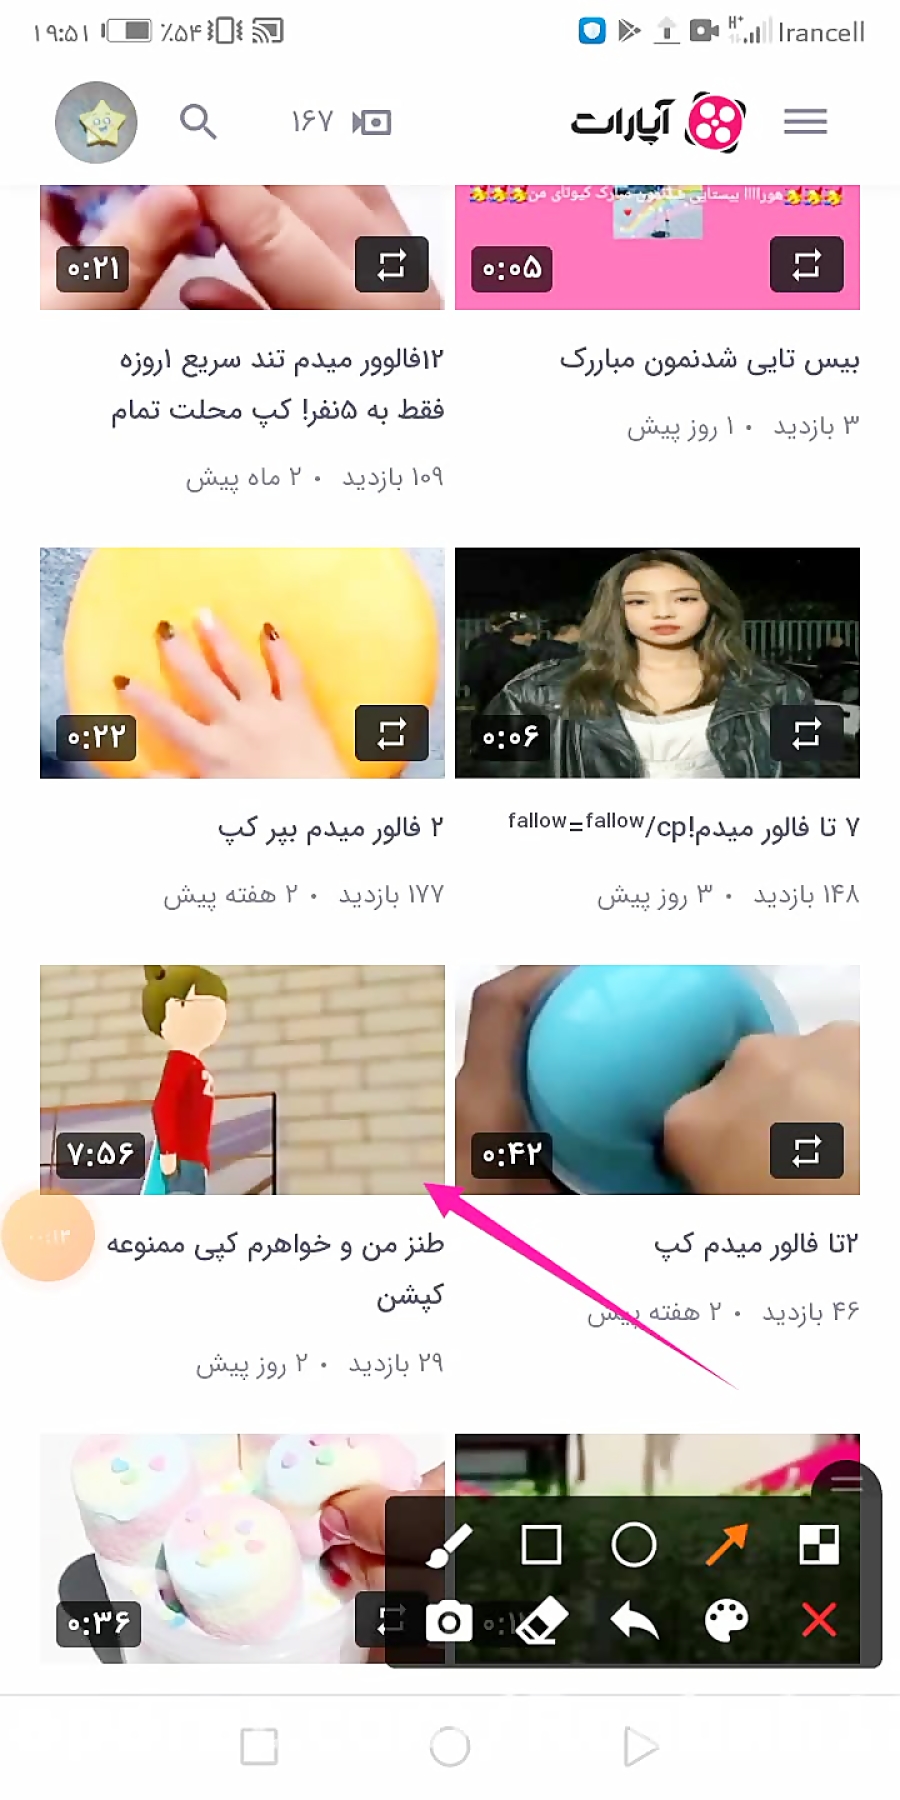 تبلیغ کانال معرکههههههههههه